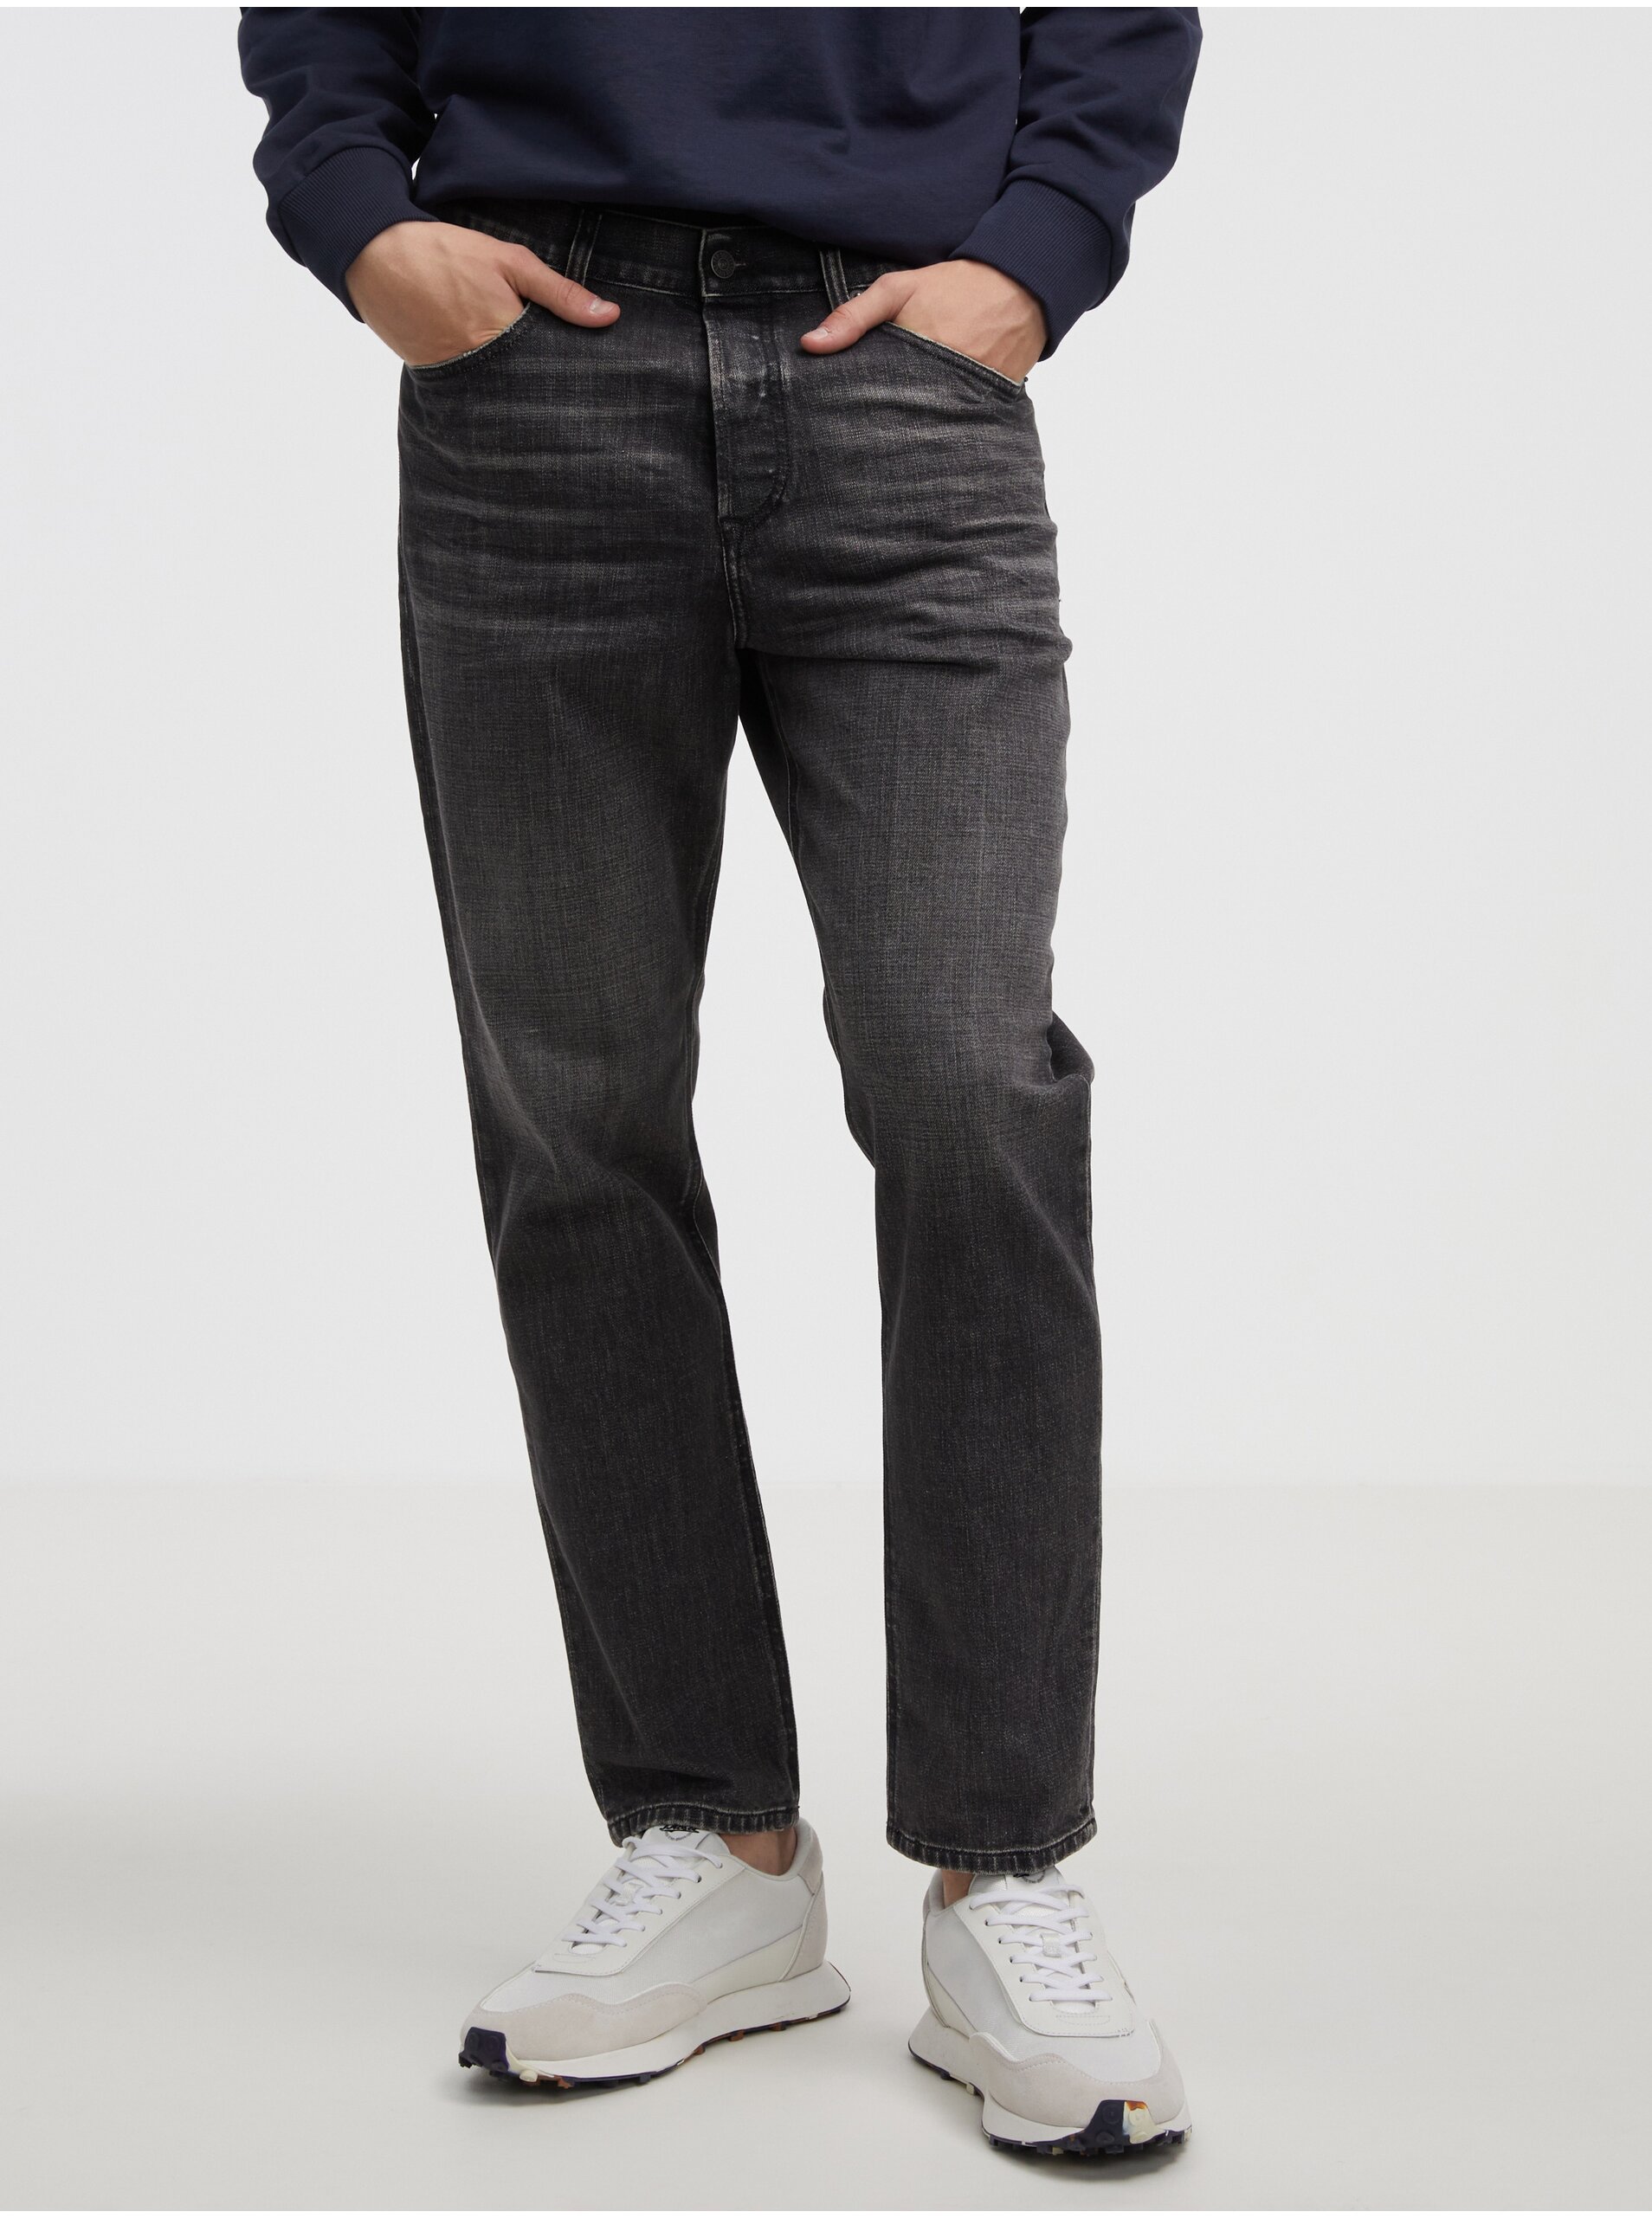 Black Men's Skinny Fit Diesel Jeans - Men's